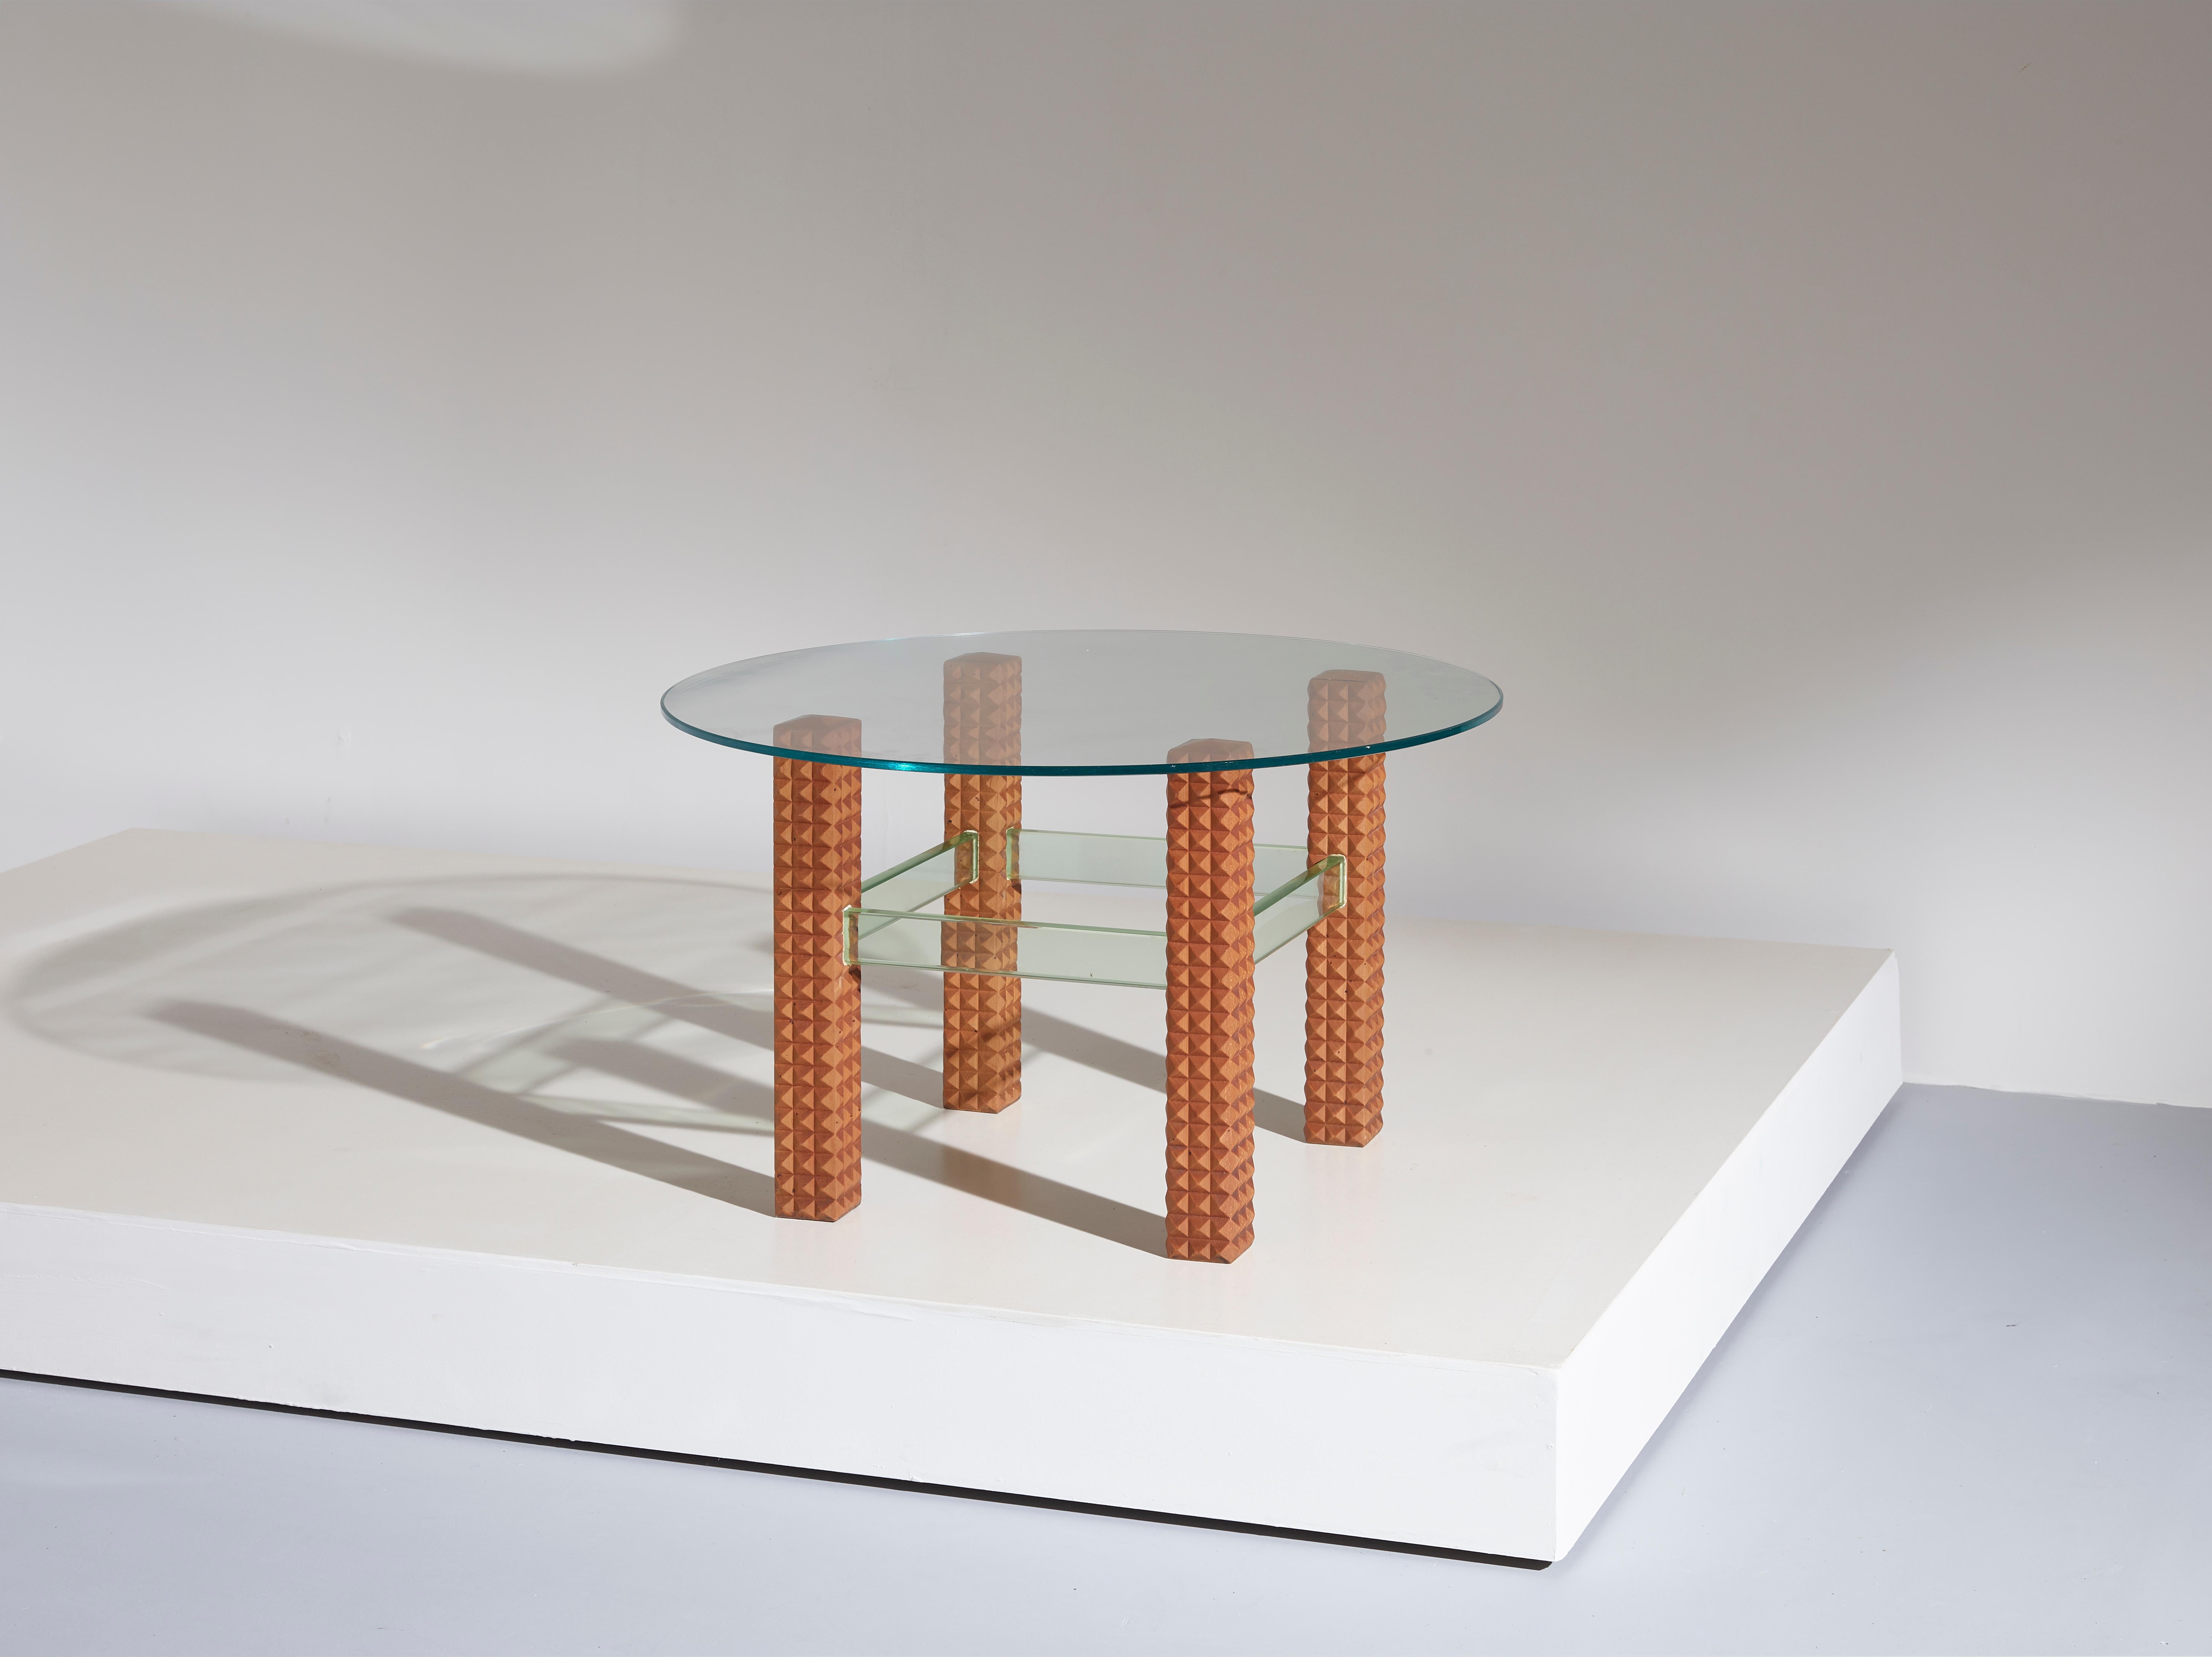 Un bel exemple de table d'appoint/de café italienne du milieu du siècle. Avec ses pieds en bois teinté à l'aniline en forme de diamant et son plateau rond en verre, son design s'adapte parfaitement aux ambiances modernes et classiques.

Dimensions